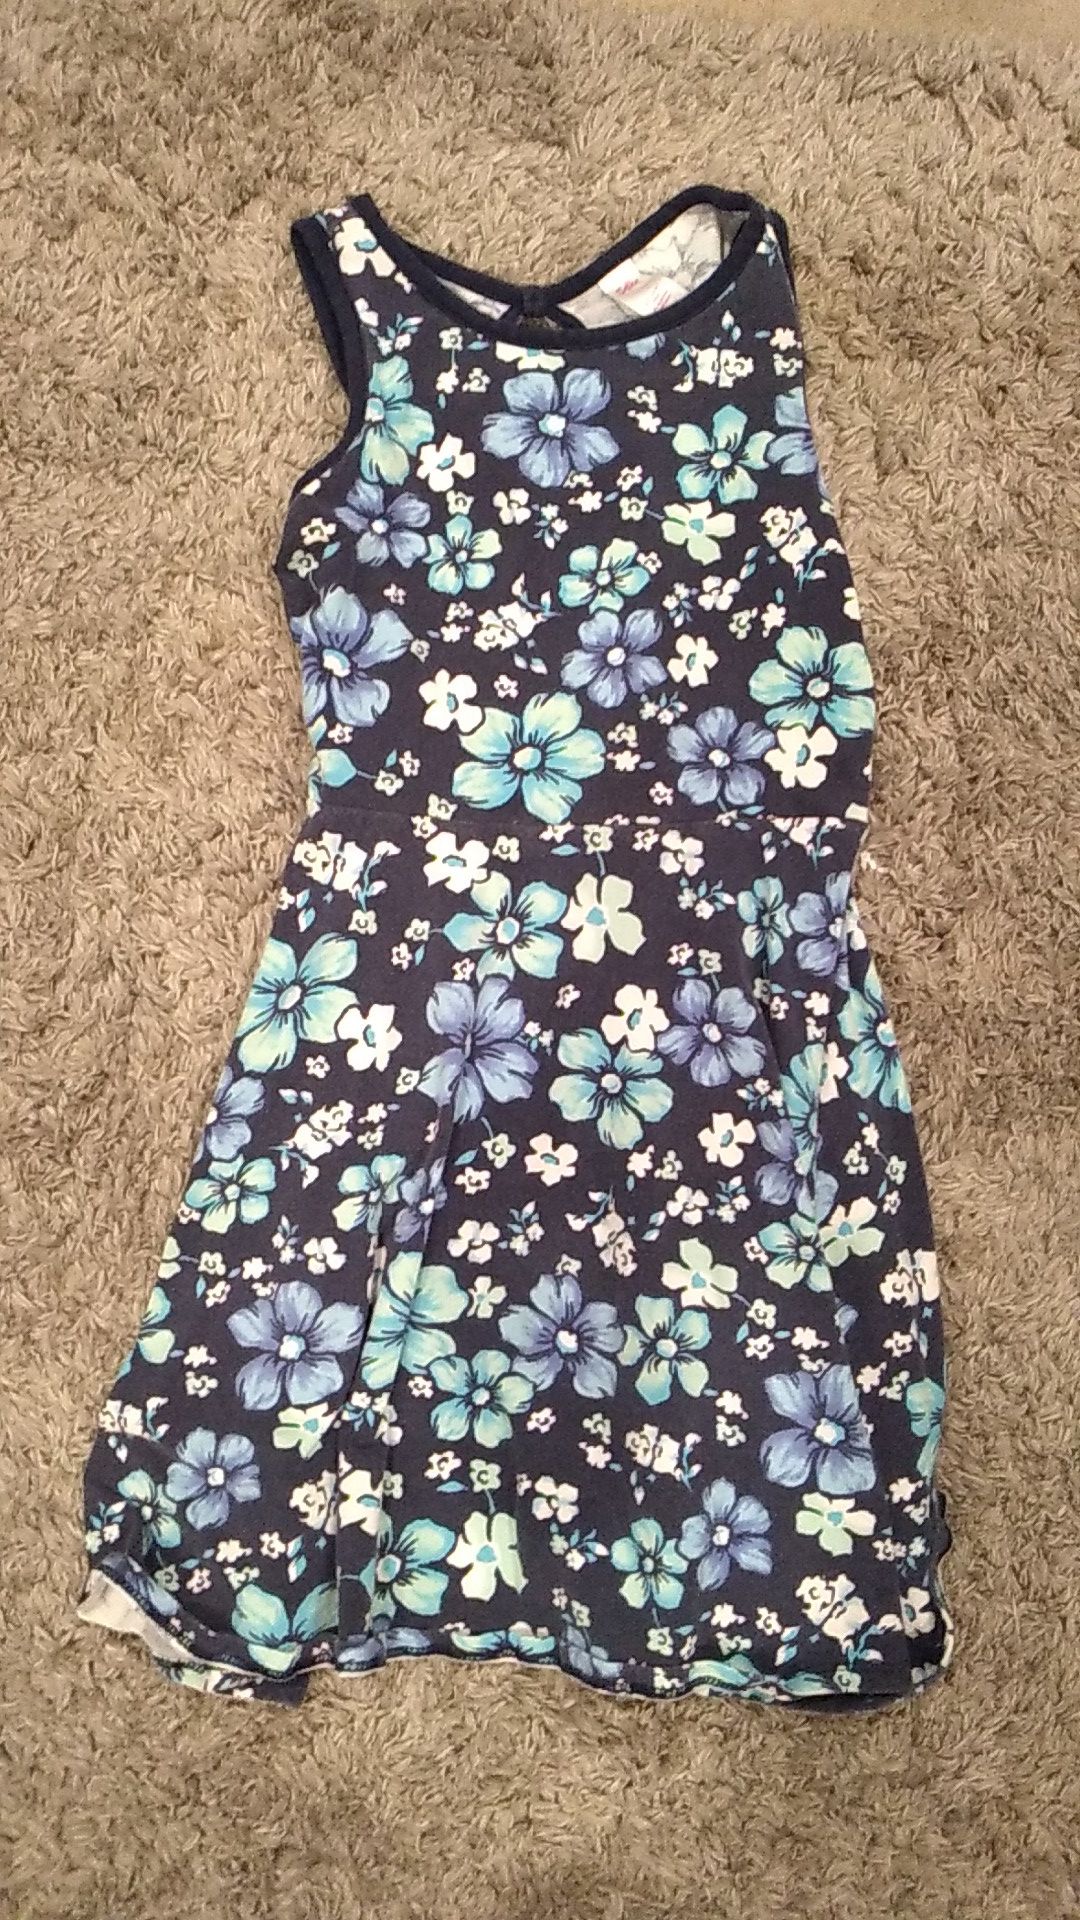 Size 8 flower dress for girls